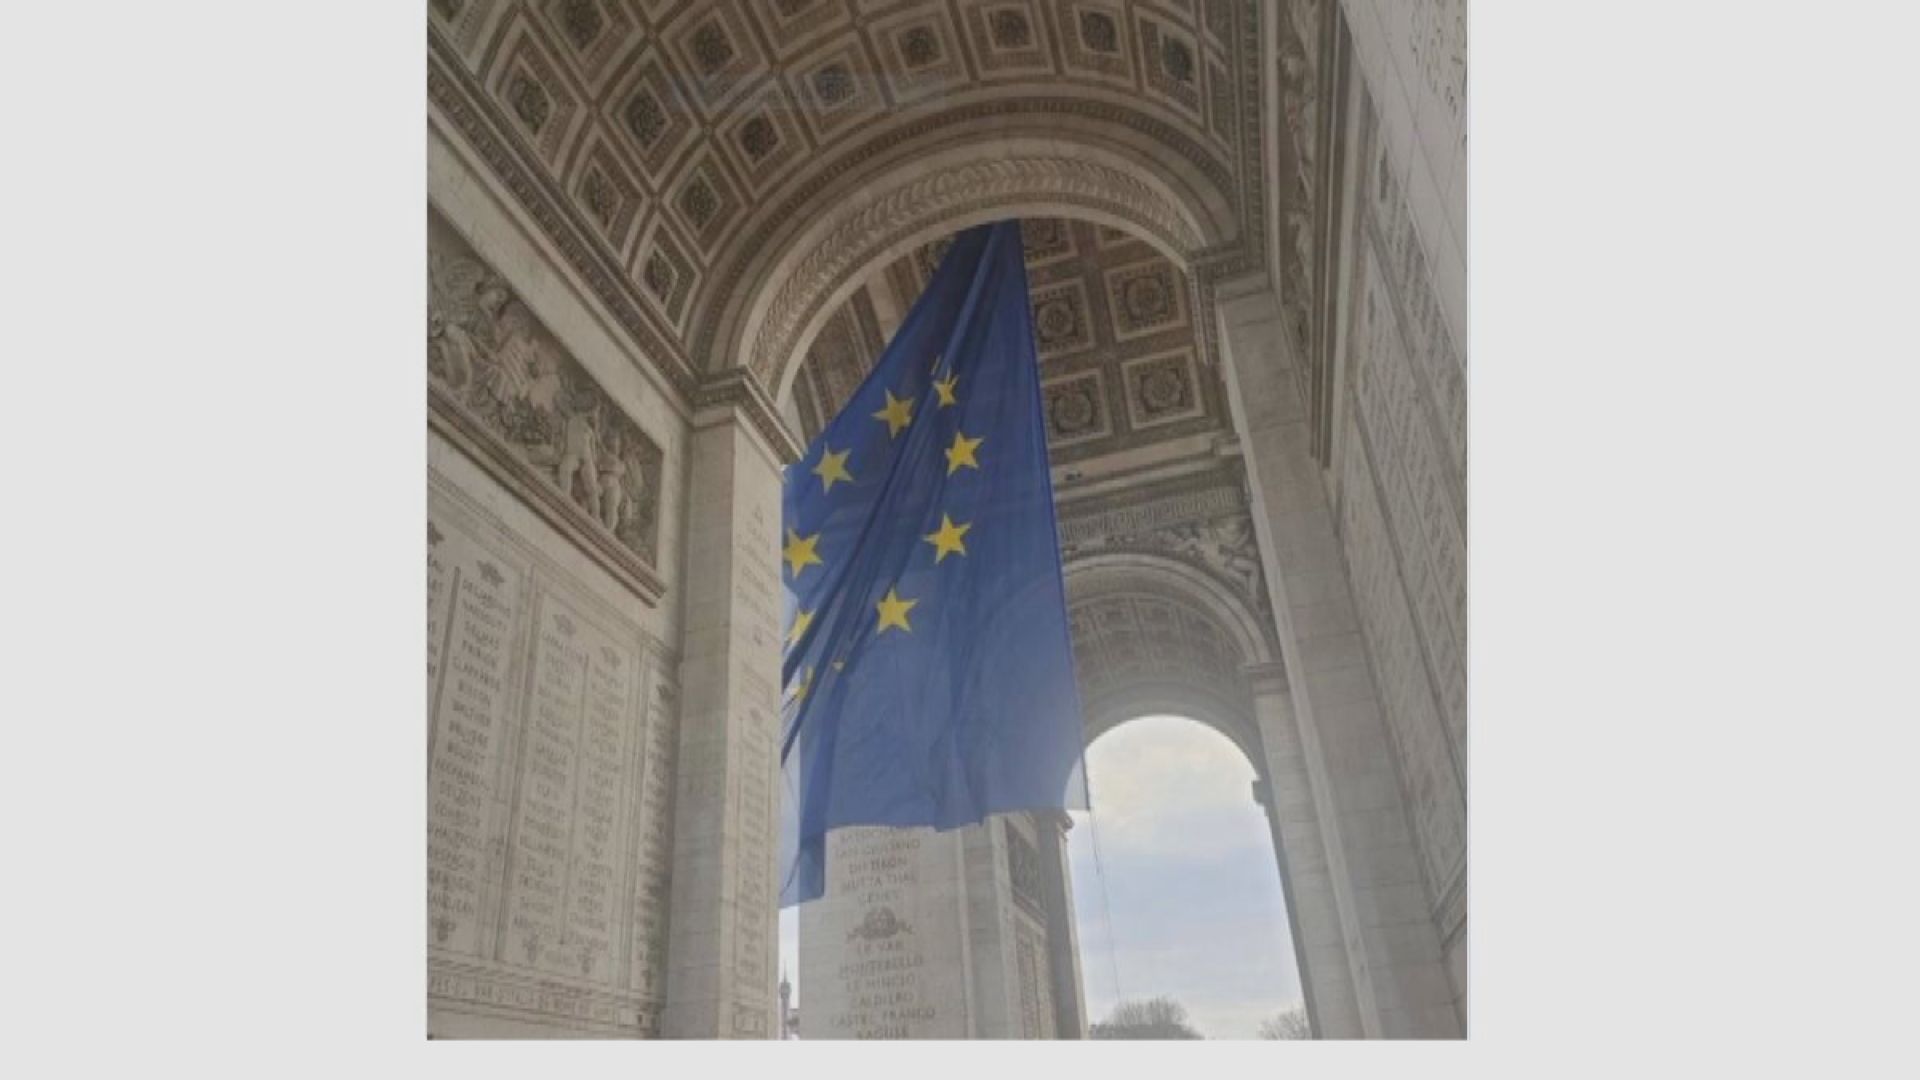 【環球薈報】法國凱旋門懸掛歐盟旗遭極右翼猛烈抨擊